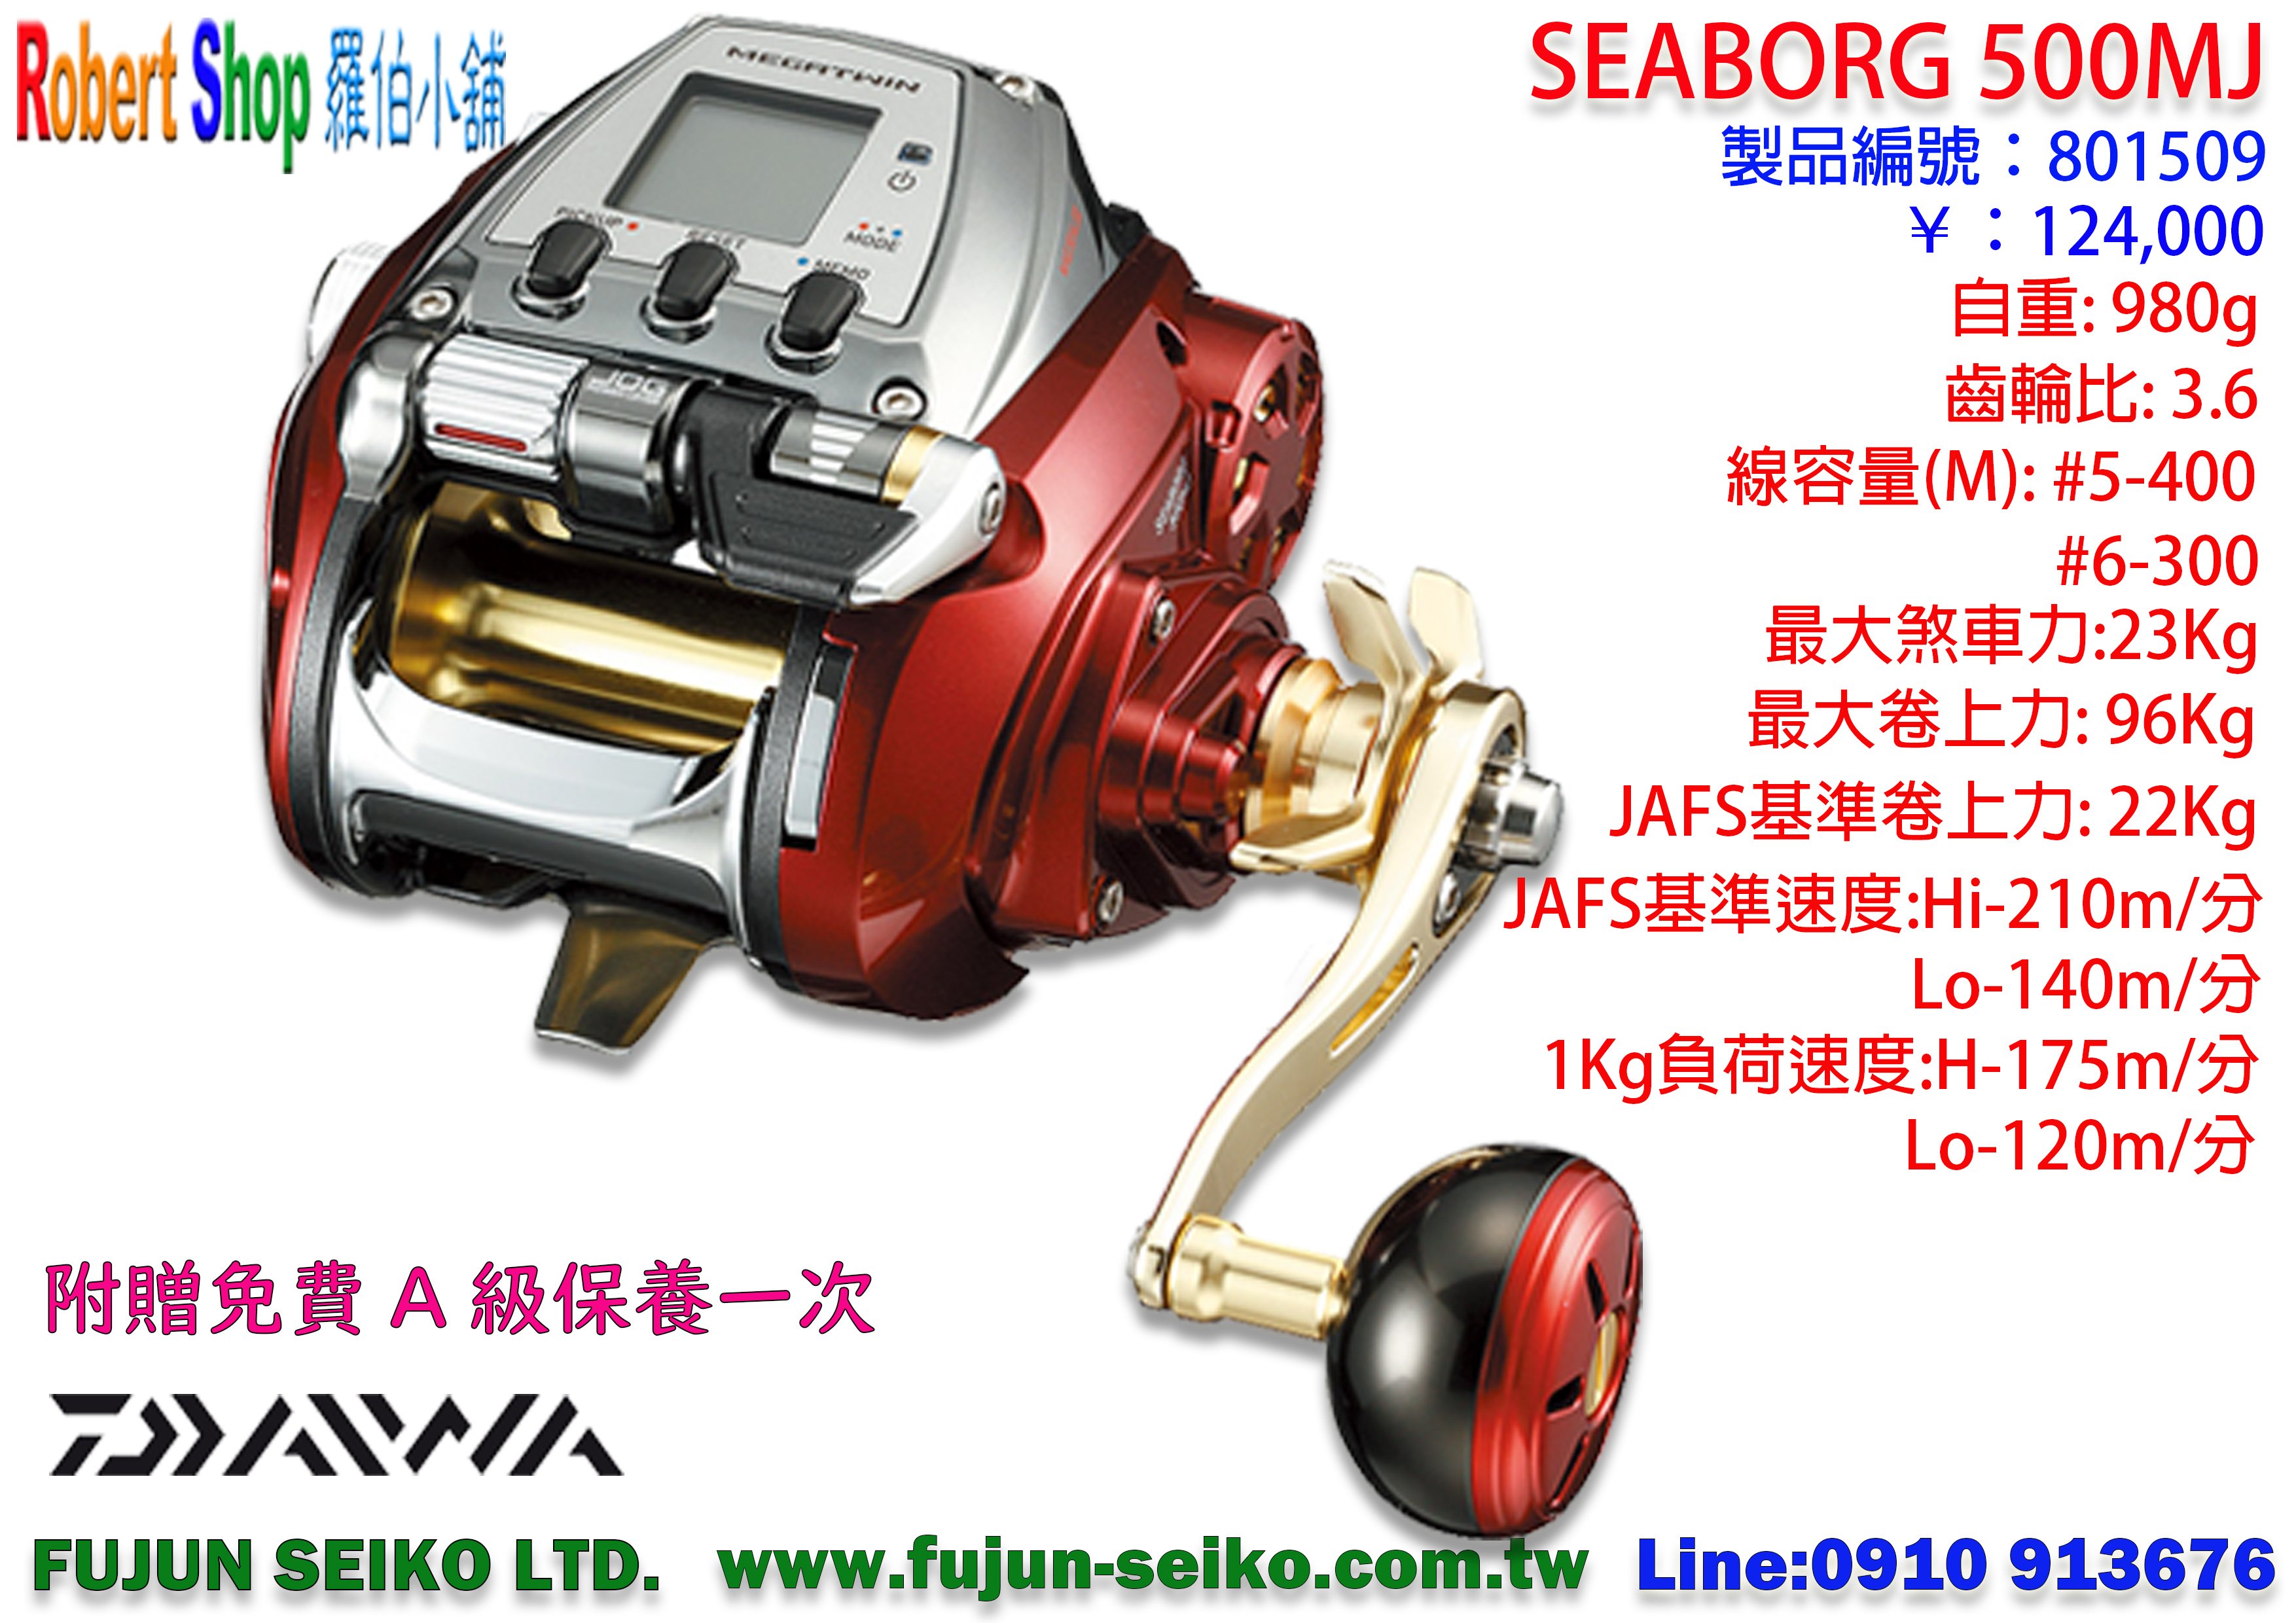 【羅伯小舖】電動捲線器Daiwa SEABORG 500MJ 附贈免費A級保養一次